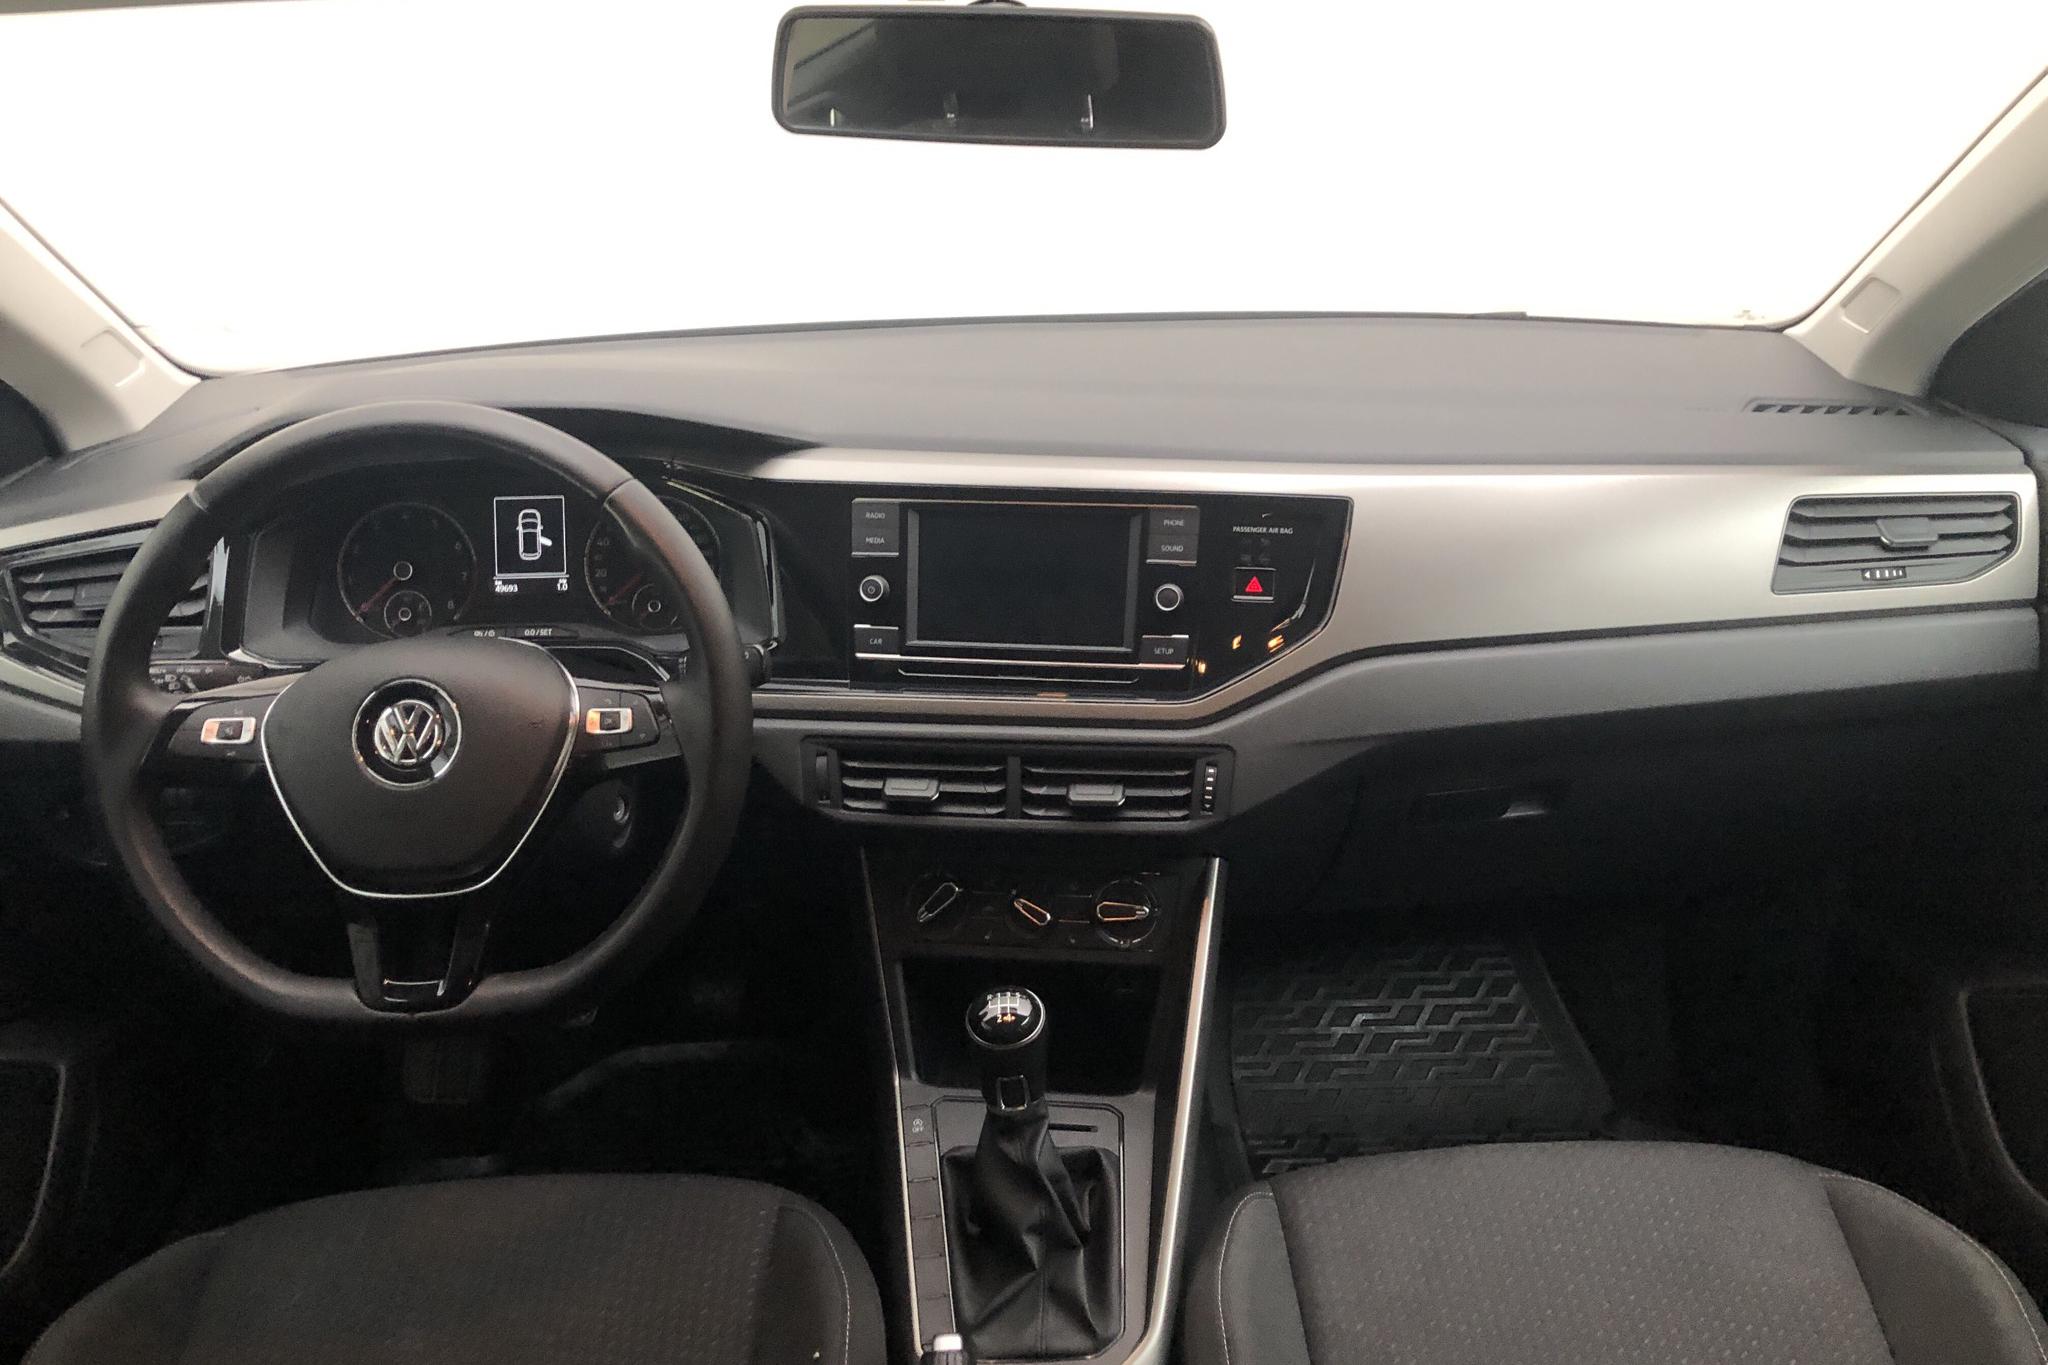 VW Polo 1.0 TSI 5dr (95hk) - 49 700 km - Manual - white - 2018